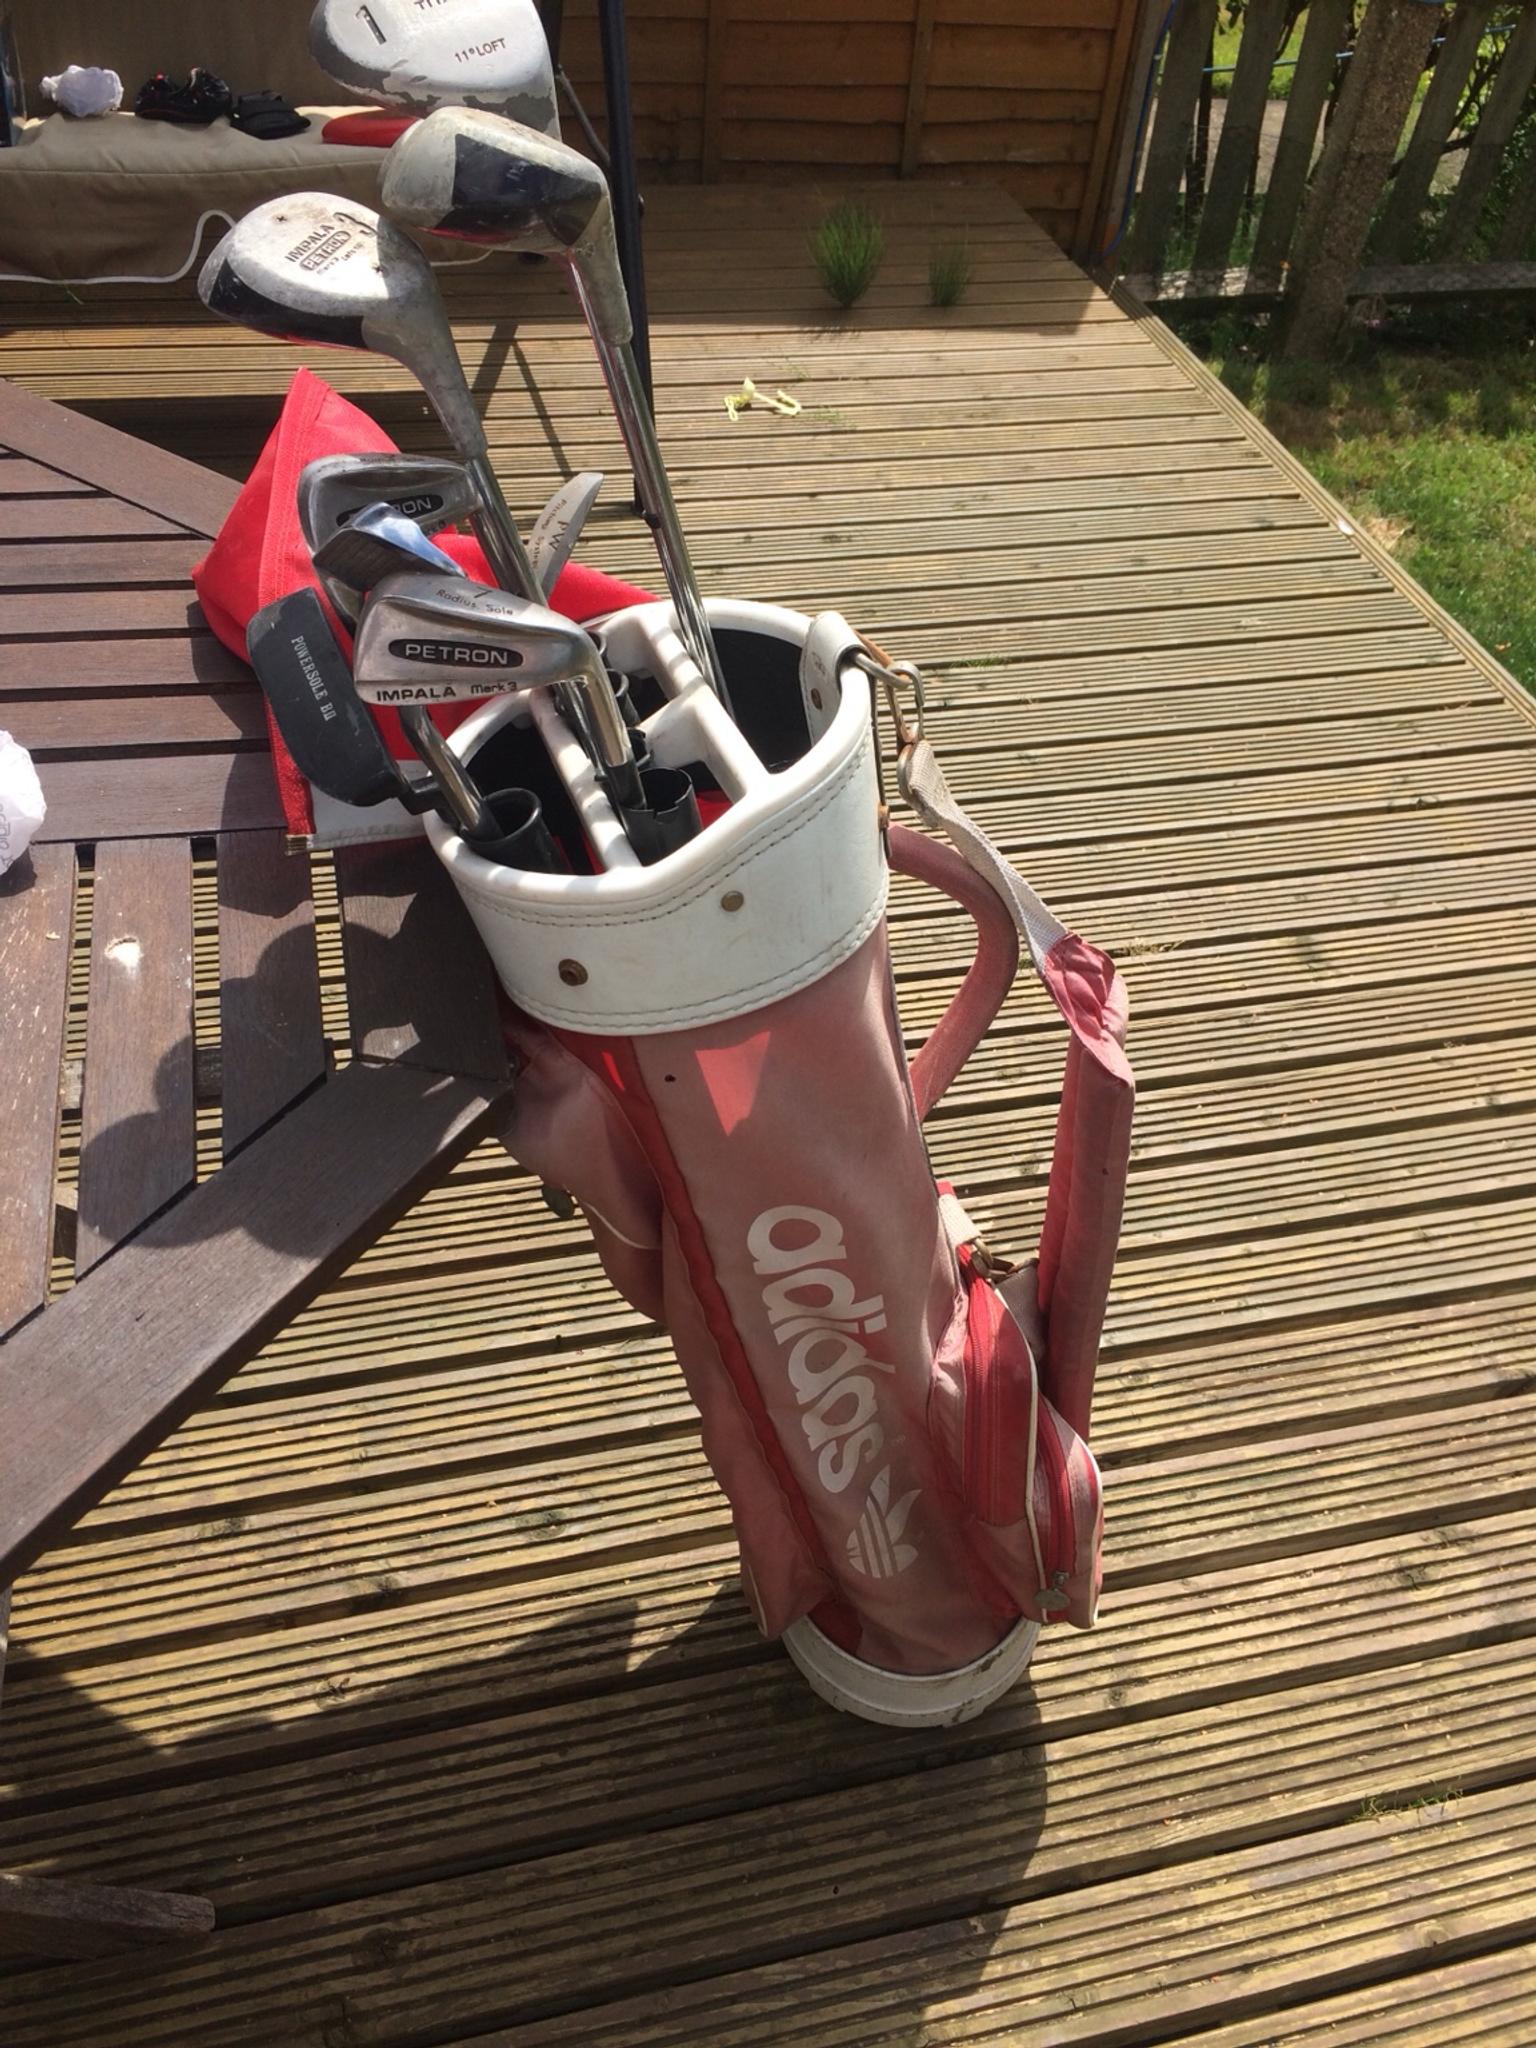 Golf club set with Adidas bag in BR3 